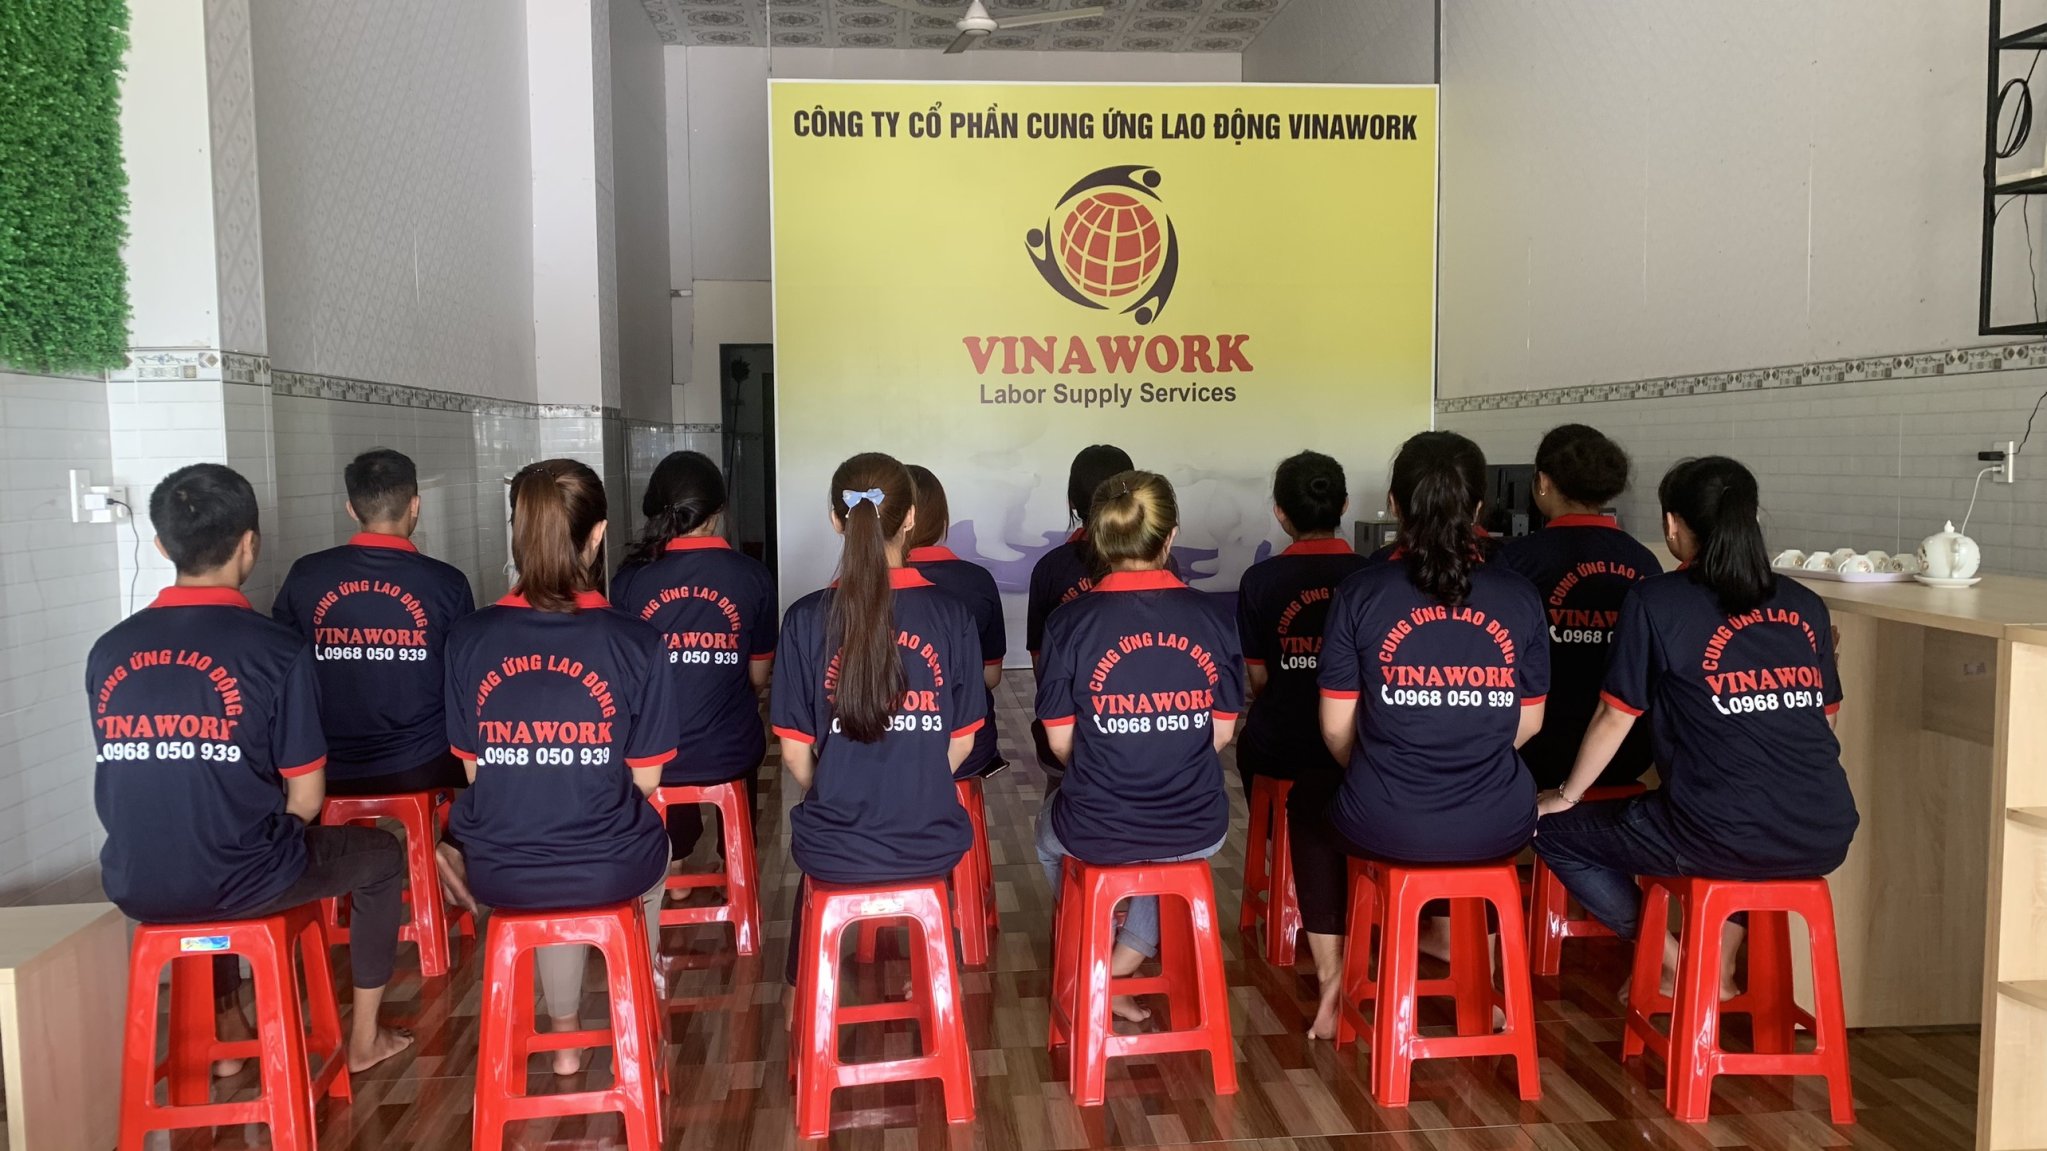 Dịch vụ cung ứng lao động tại Tiền Giang là phương án giải quyết tối ưu nhất cho các doanh nghiệp